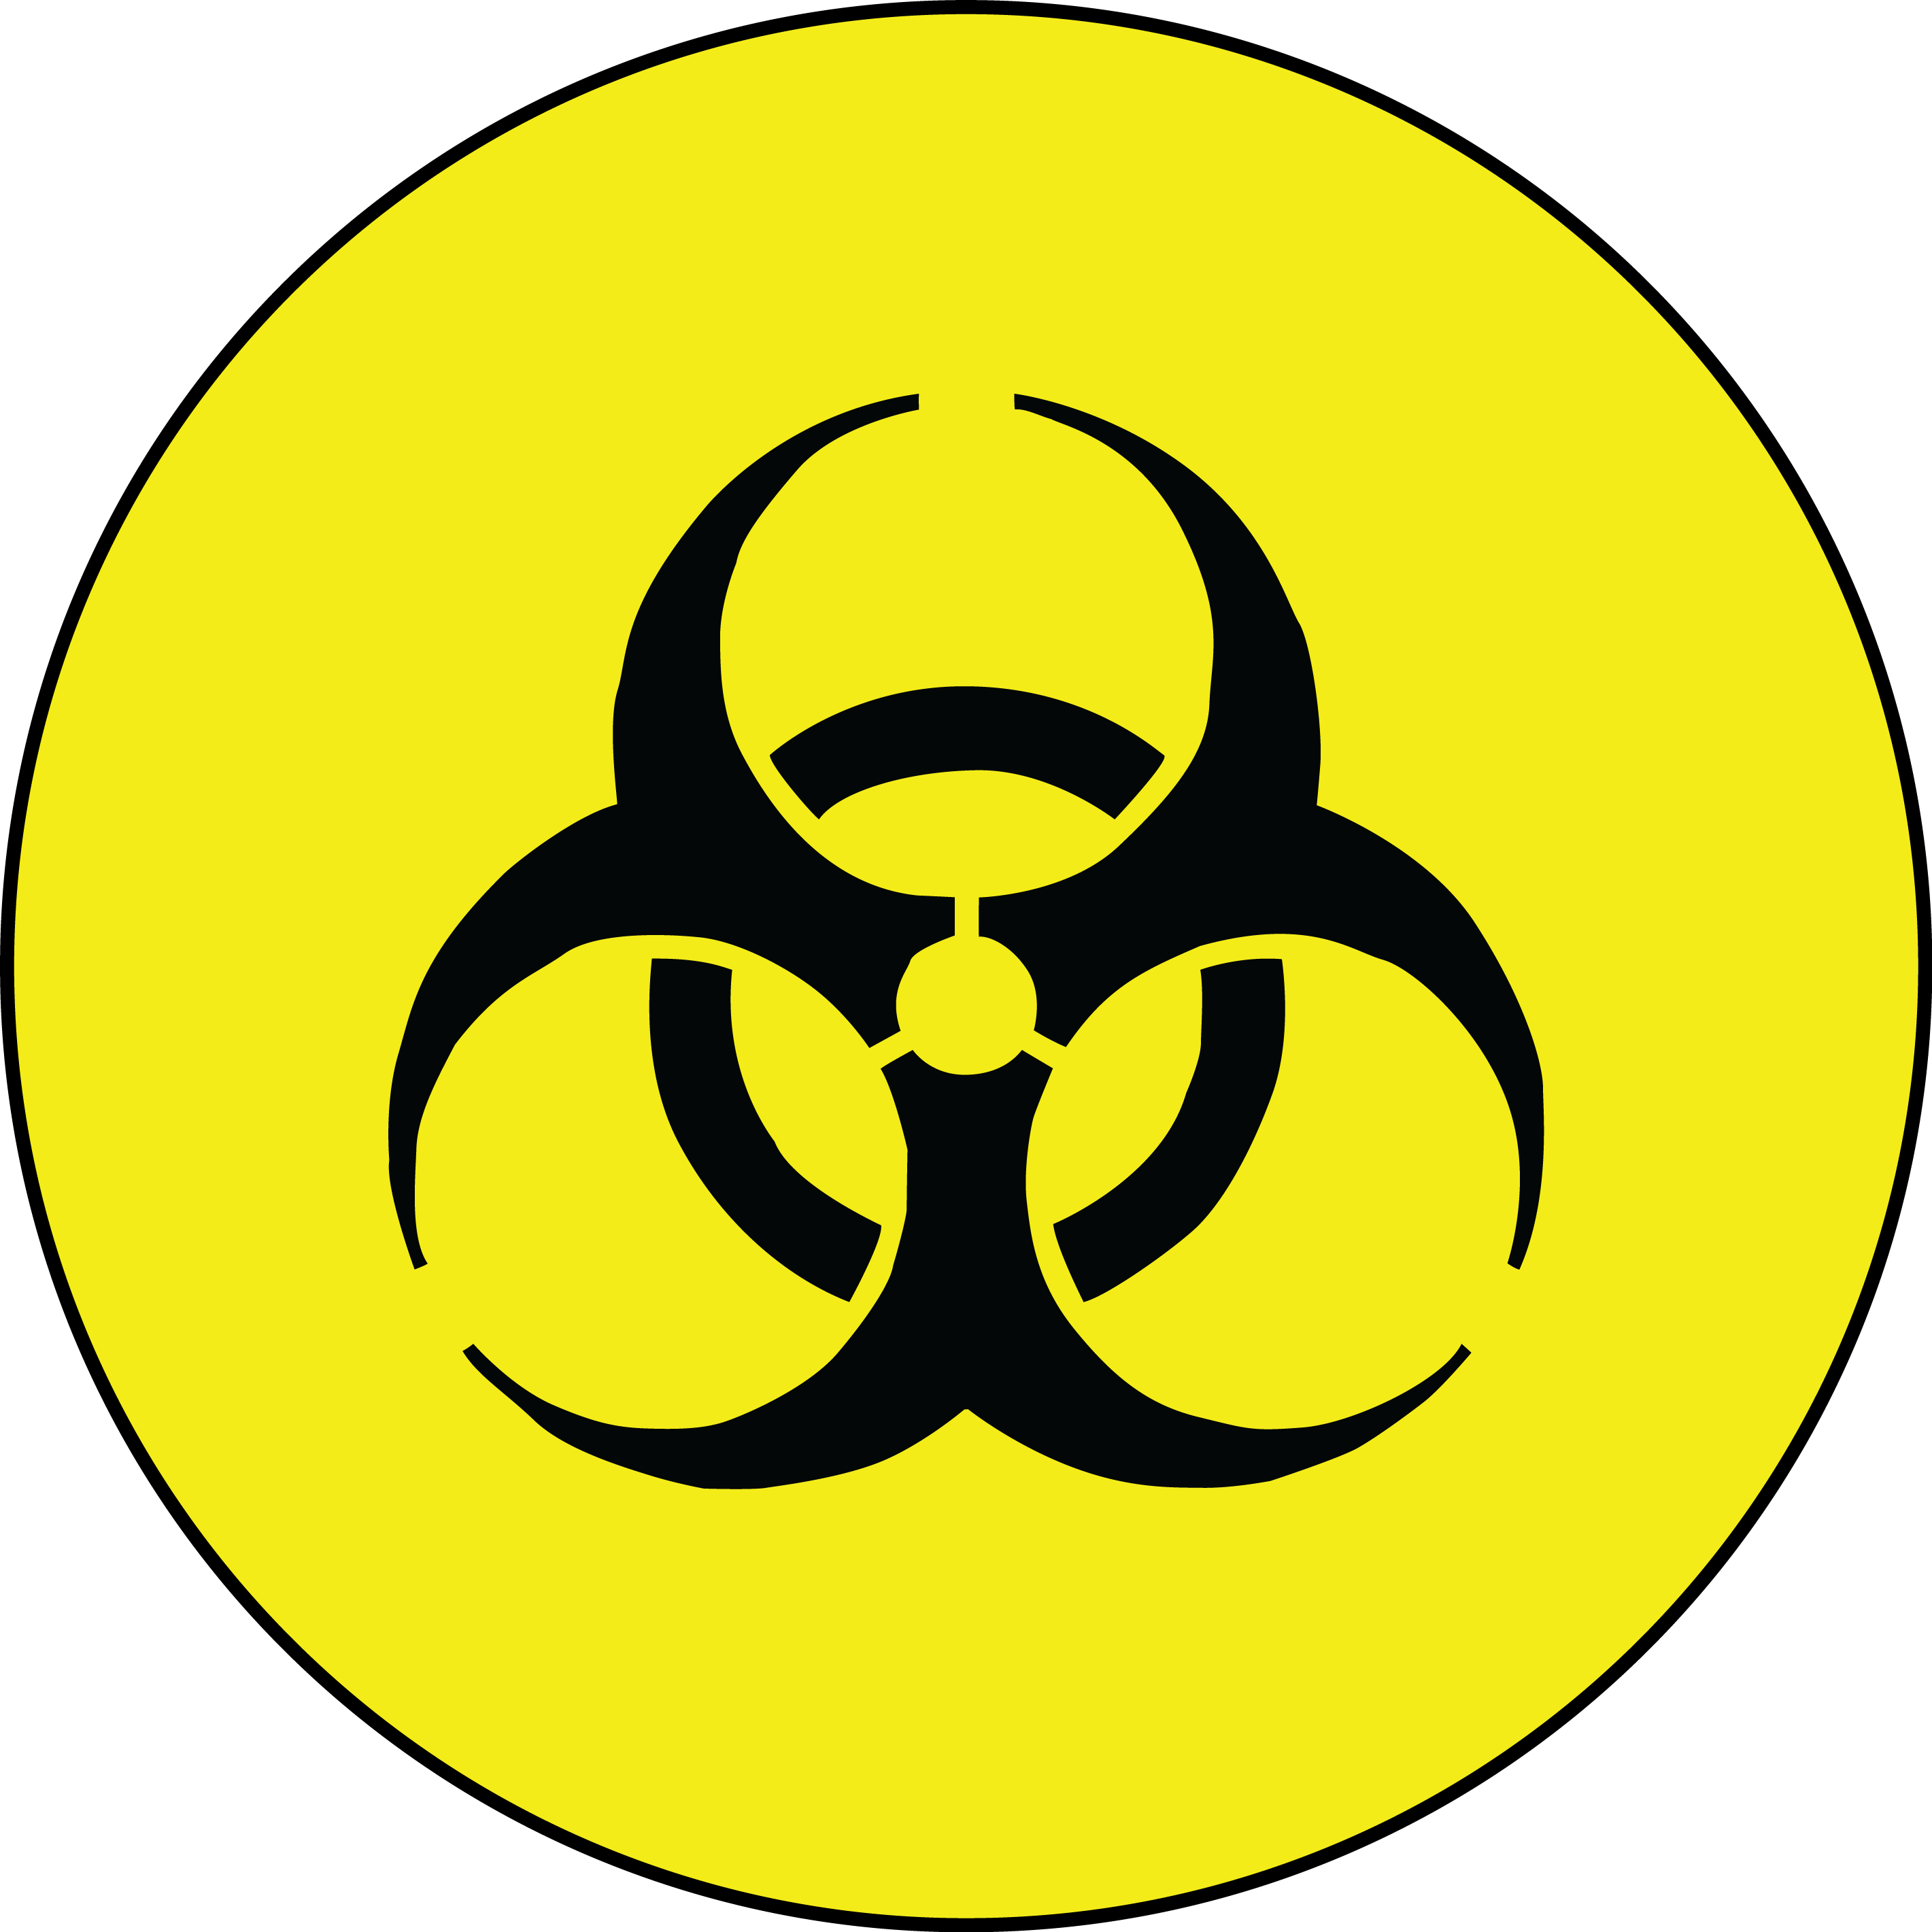 Orange Biohazard Logo - Biohazard Symbol PNG Transparent Image